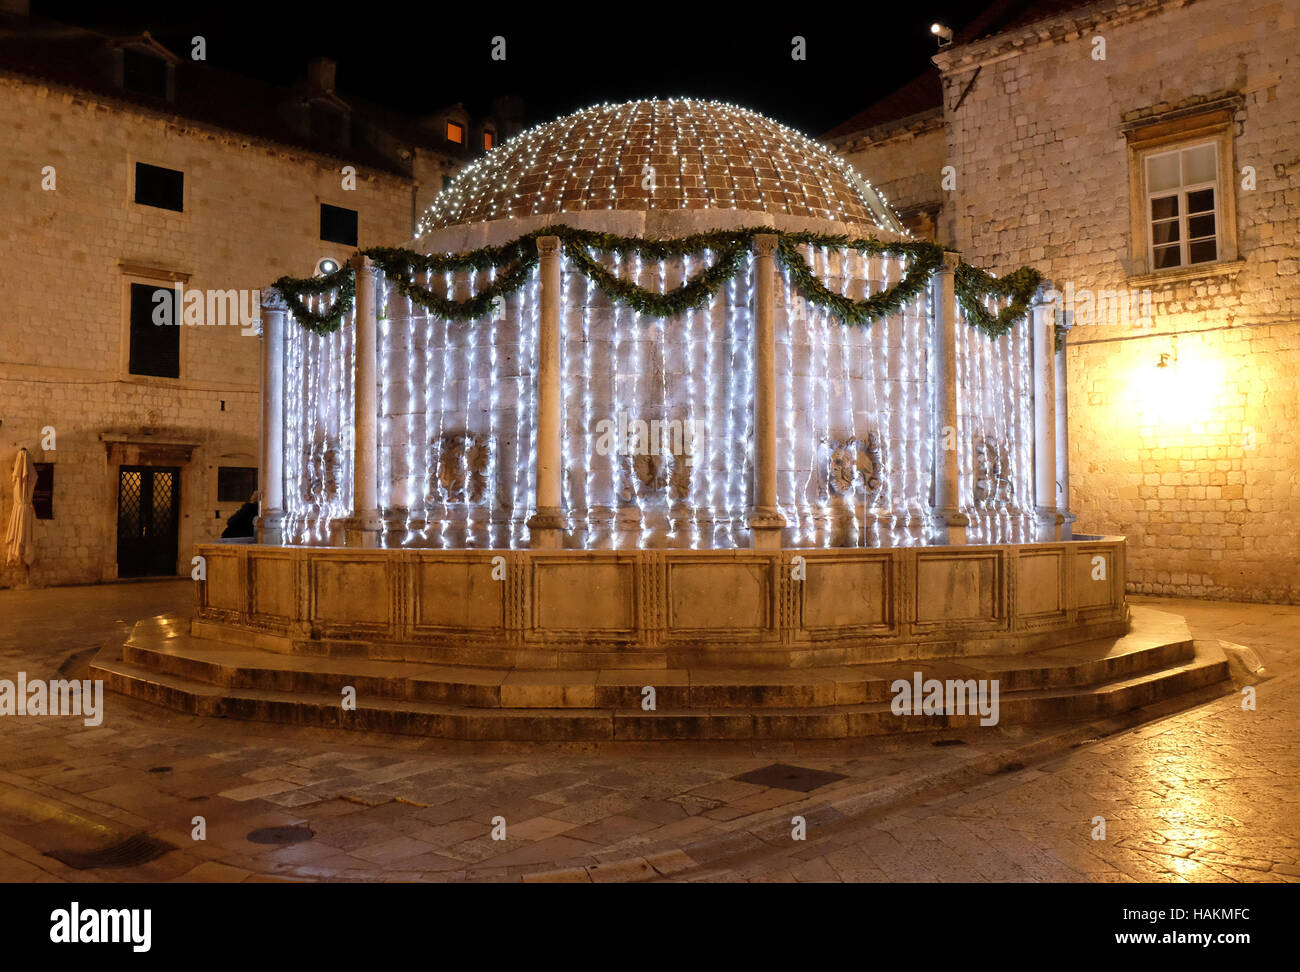 Onofrio fontana decorata con luci di Natale ornamenti e splendente nella romantica atmosfera, Dubrovnik, Croazia Foto Stock